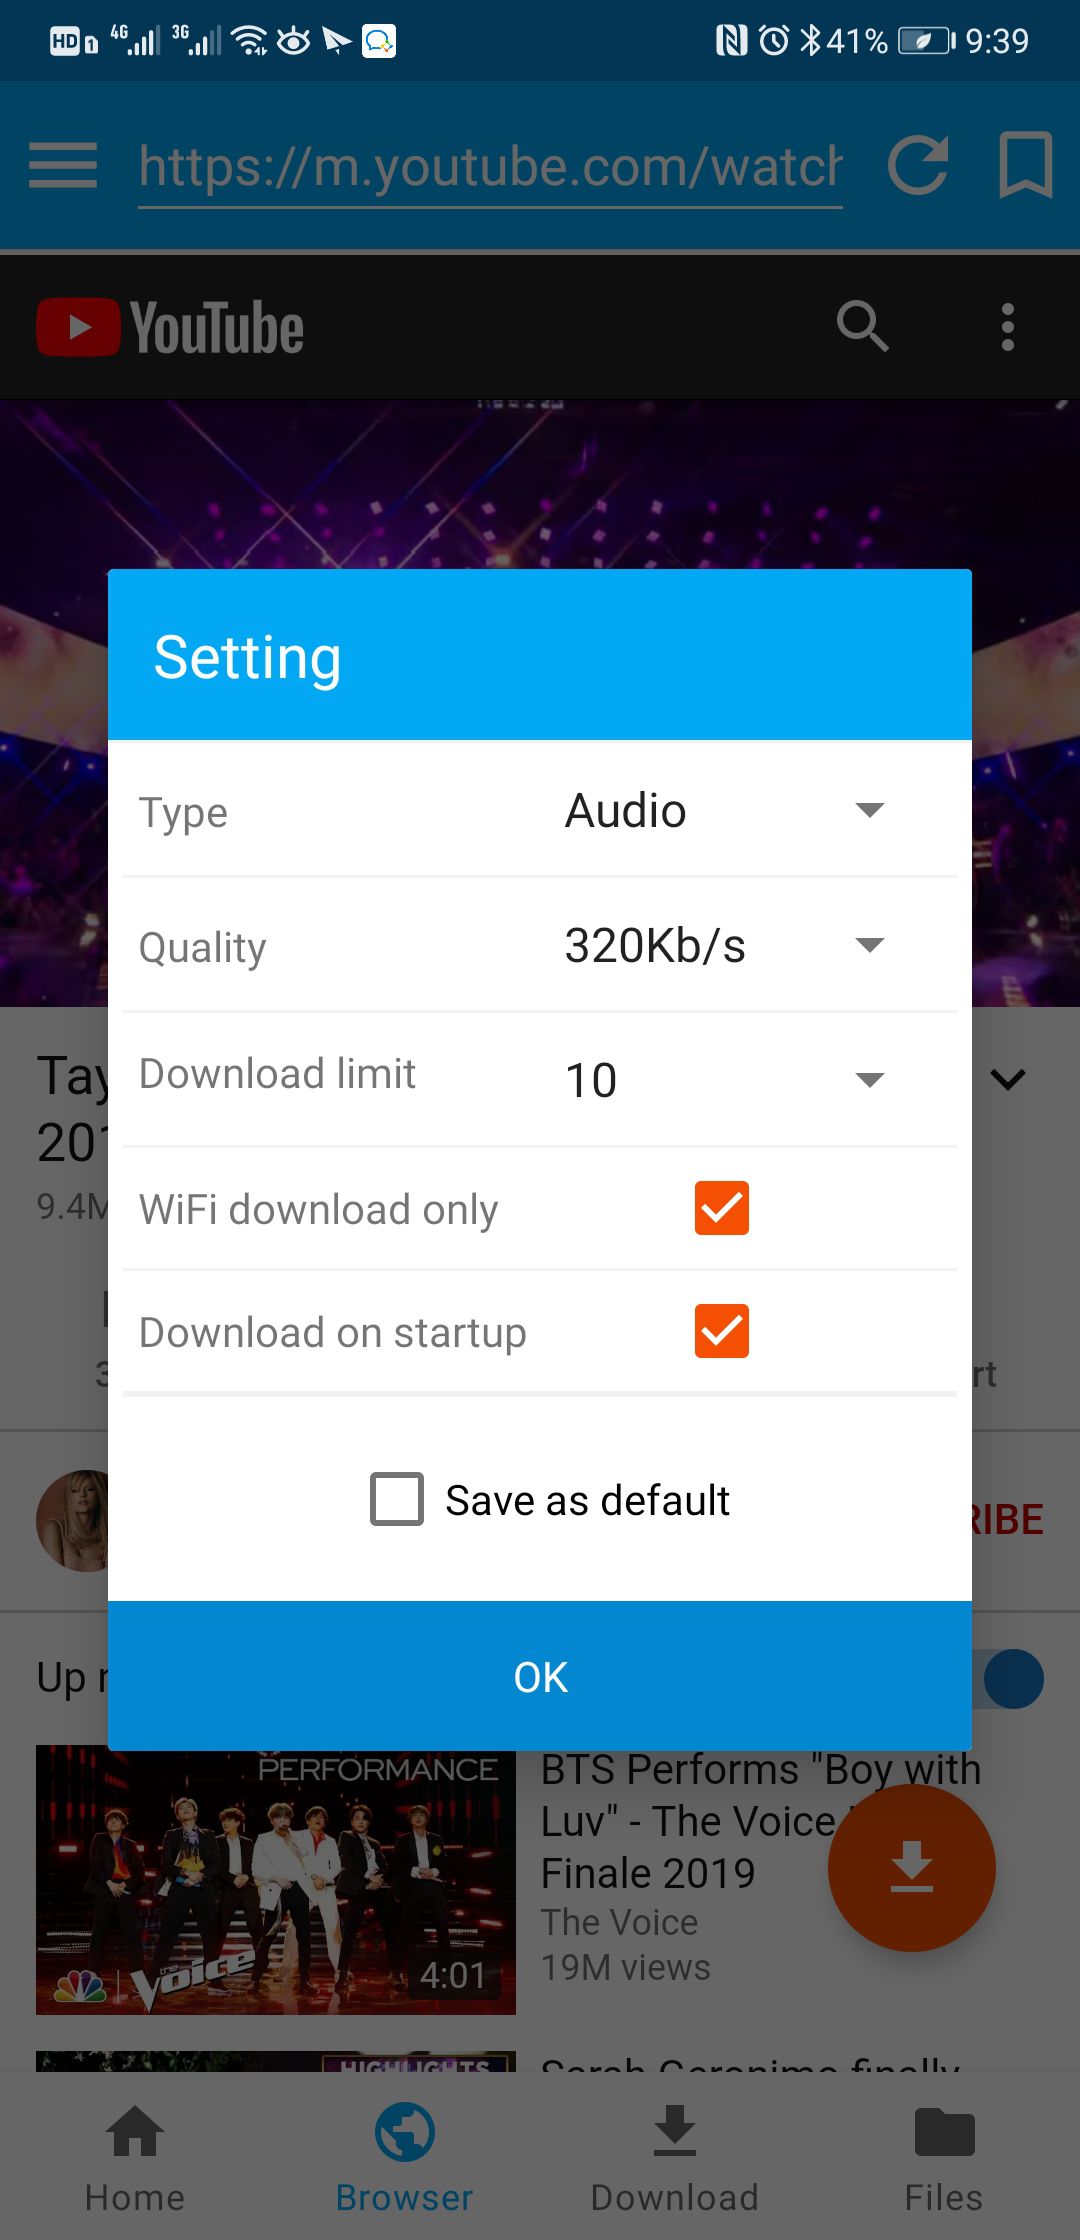 iTubeGo YouTube Downloader free instals